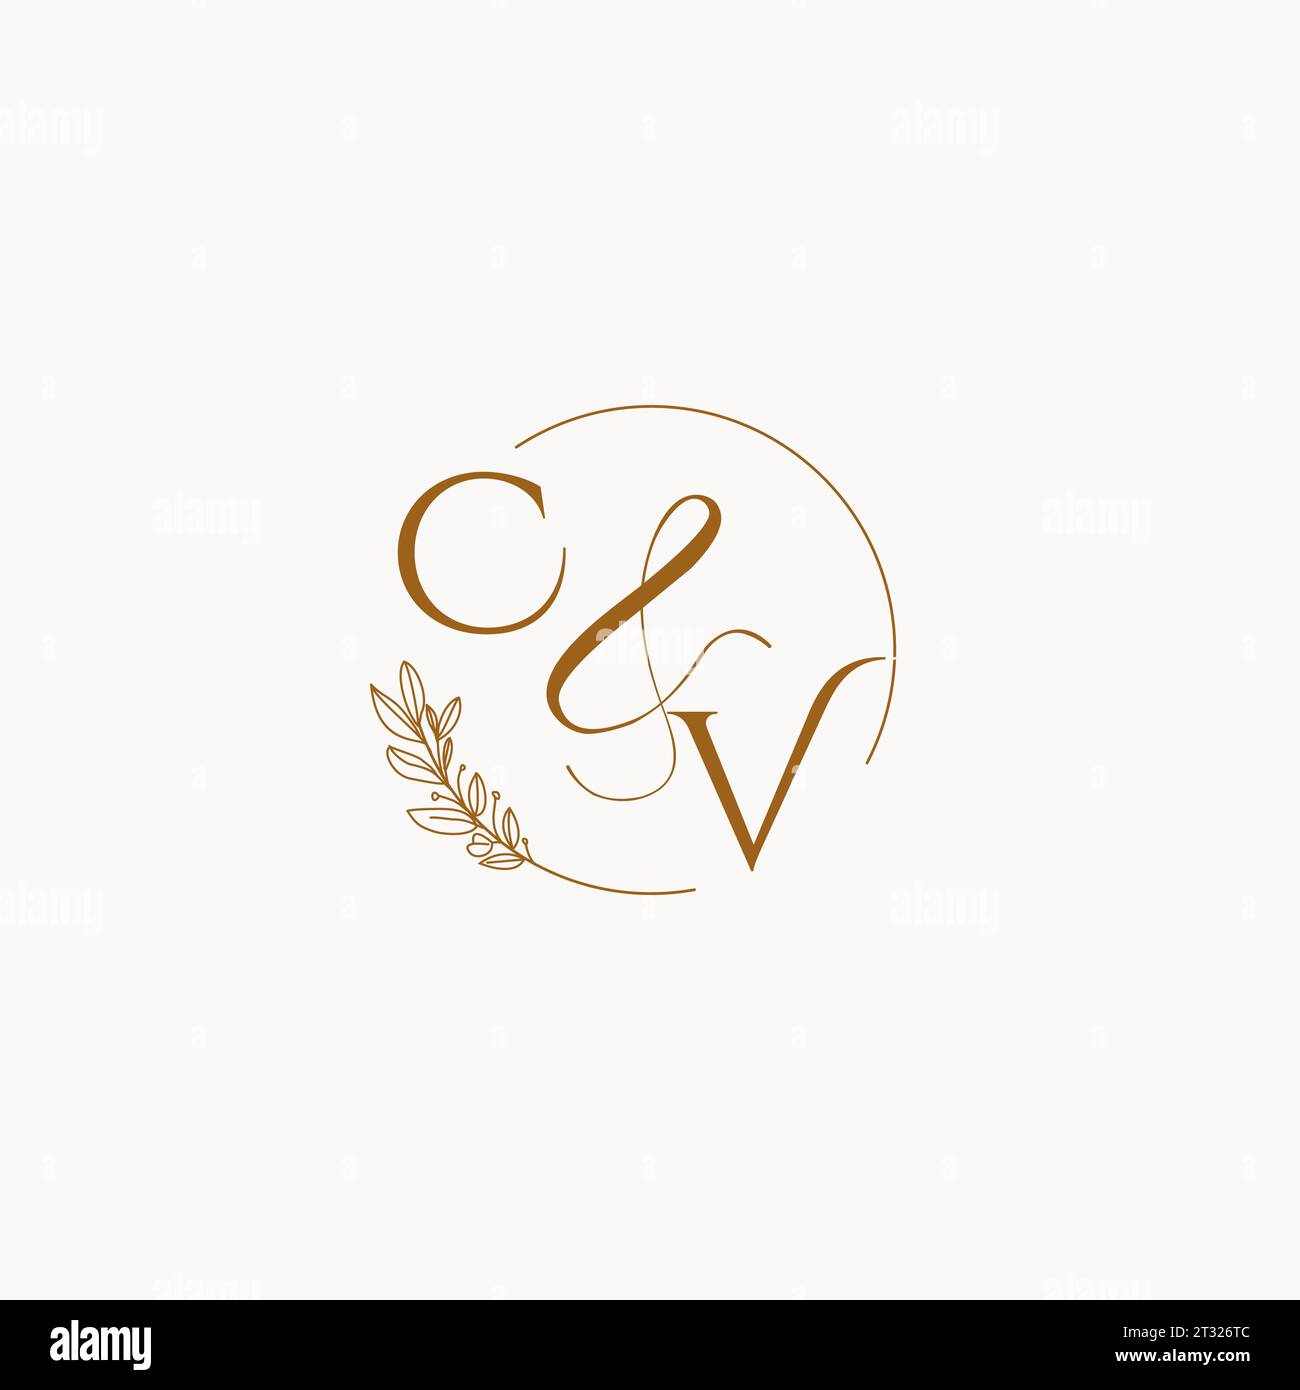 CV initial wedding monogram logo design ideas Stock Vector